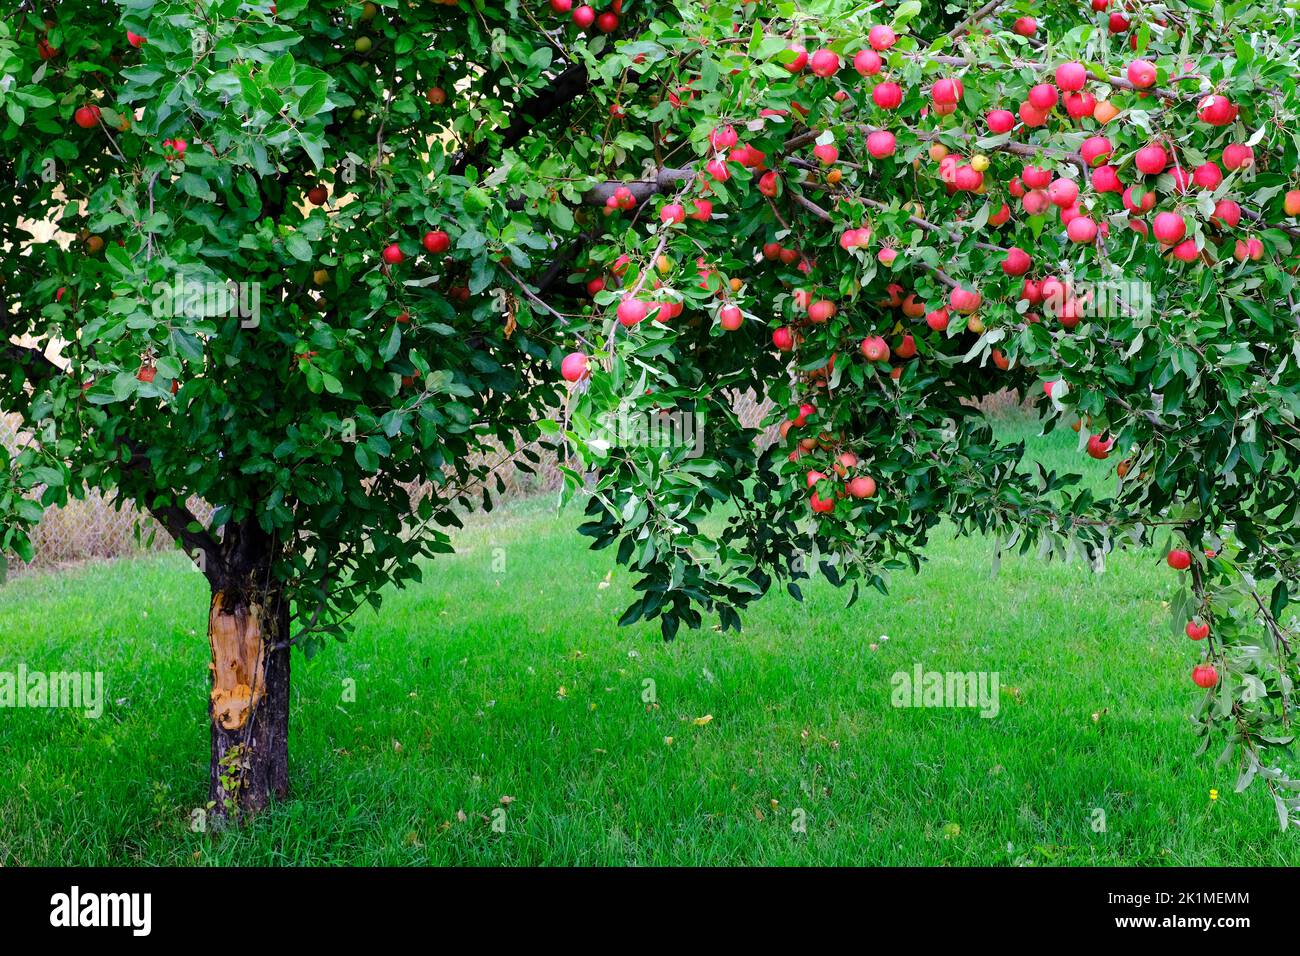 Manzano en hierba verde en otoño con muchas manzanas rojas maduras listas para cosechar Foto de stock